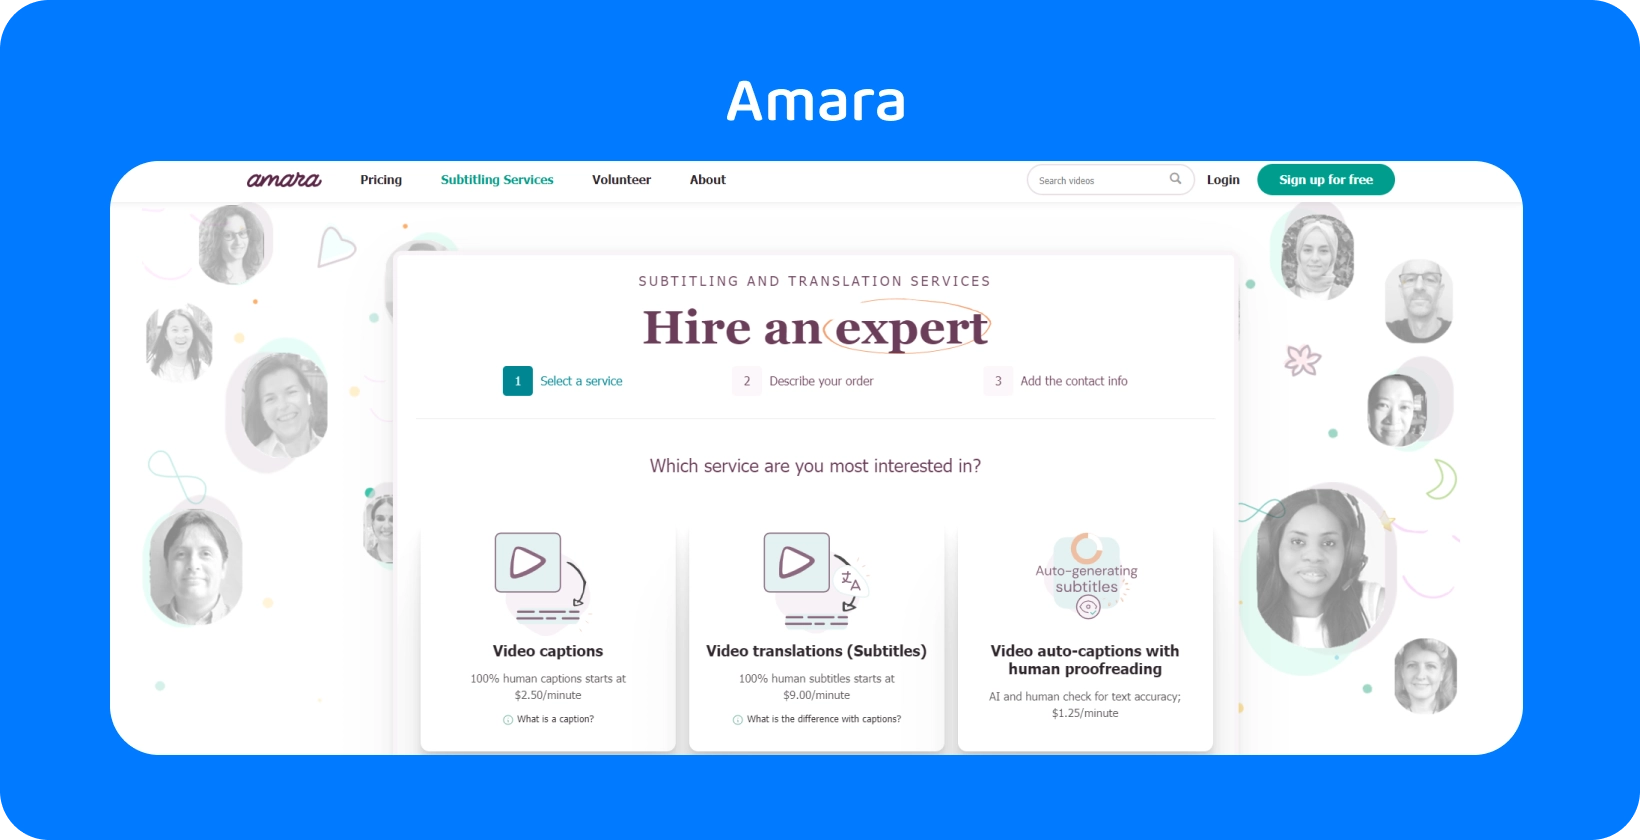 Amara veebileht, mis näitab, kuidas veebis videotele subtiitreid hõlpsalt lisada, parandades vaatajate juurdepääsetavust.